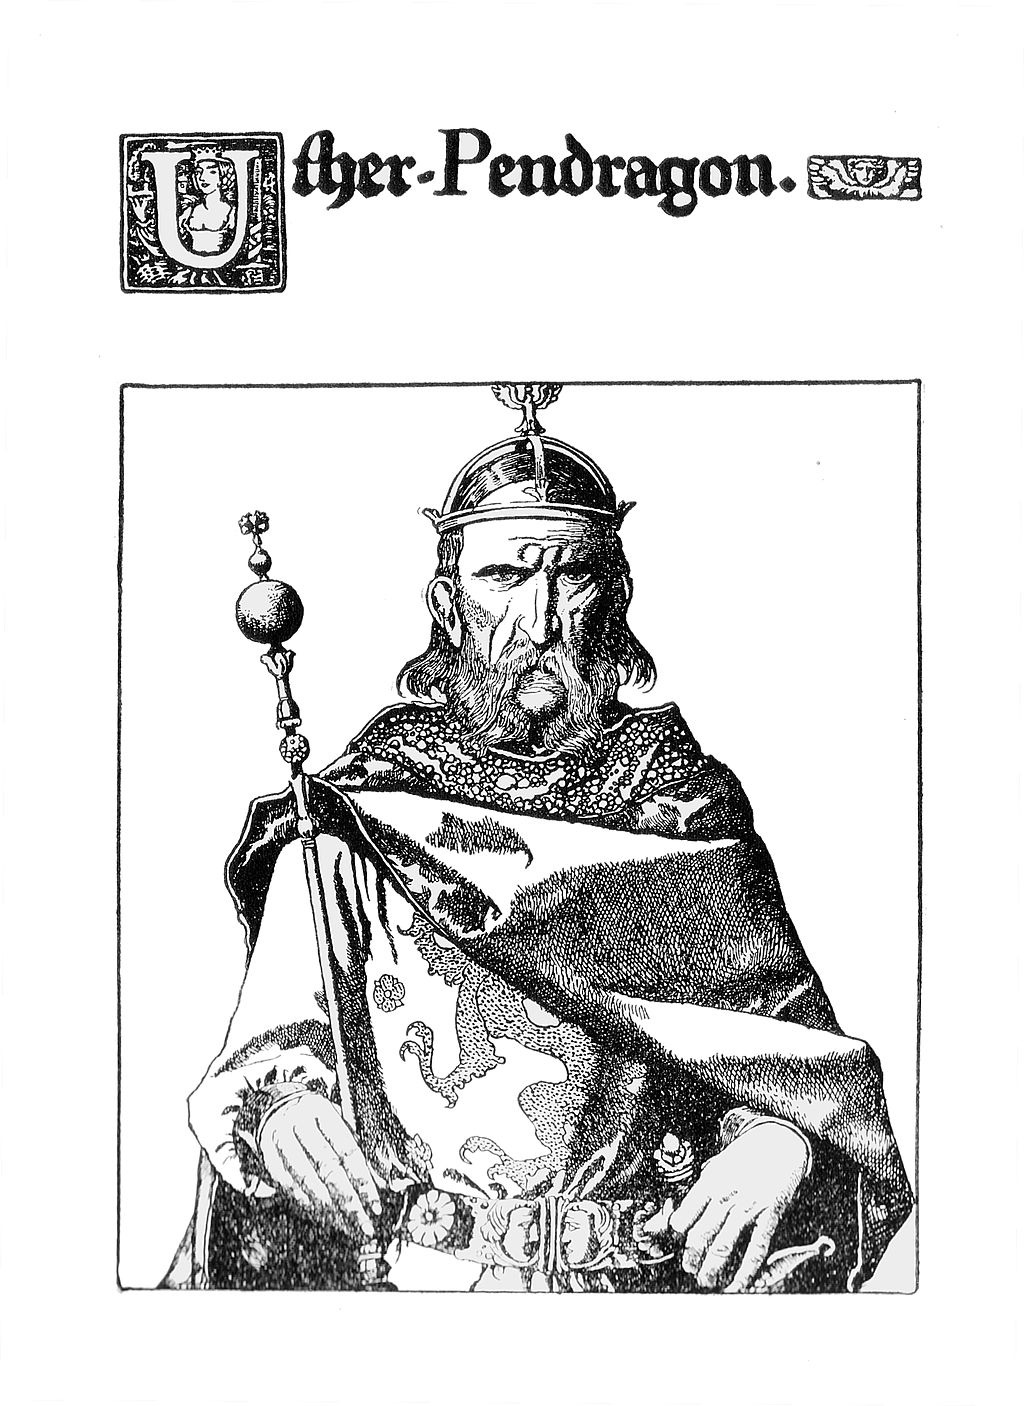 Uther Pendragon : Roi et père du roi Arthur dans les Légendes arthuriennes. Uther Pendragon esst un roi de Bretagne en lutte contre les Saxons, et le père du roi Arthur.Ce dessin est une illustration de Howard Pyle (1903)